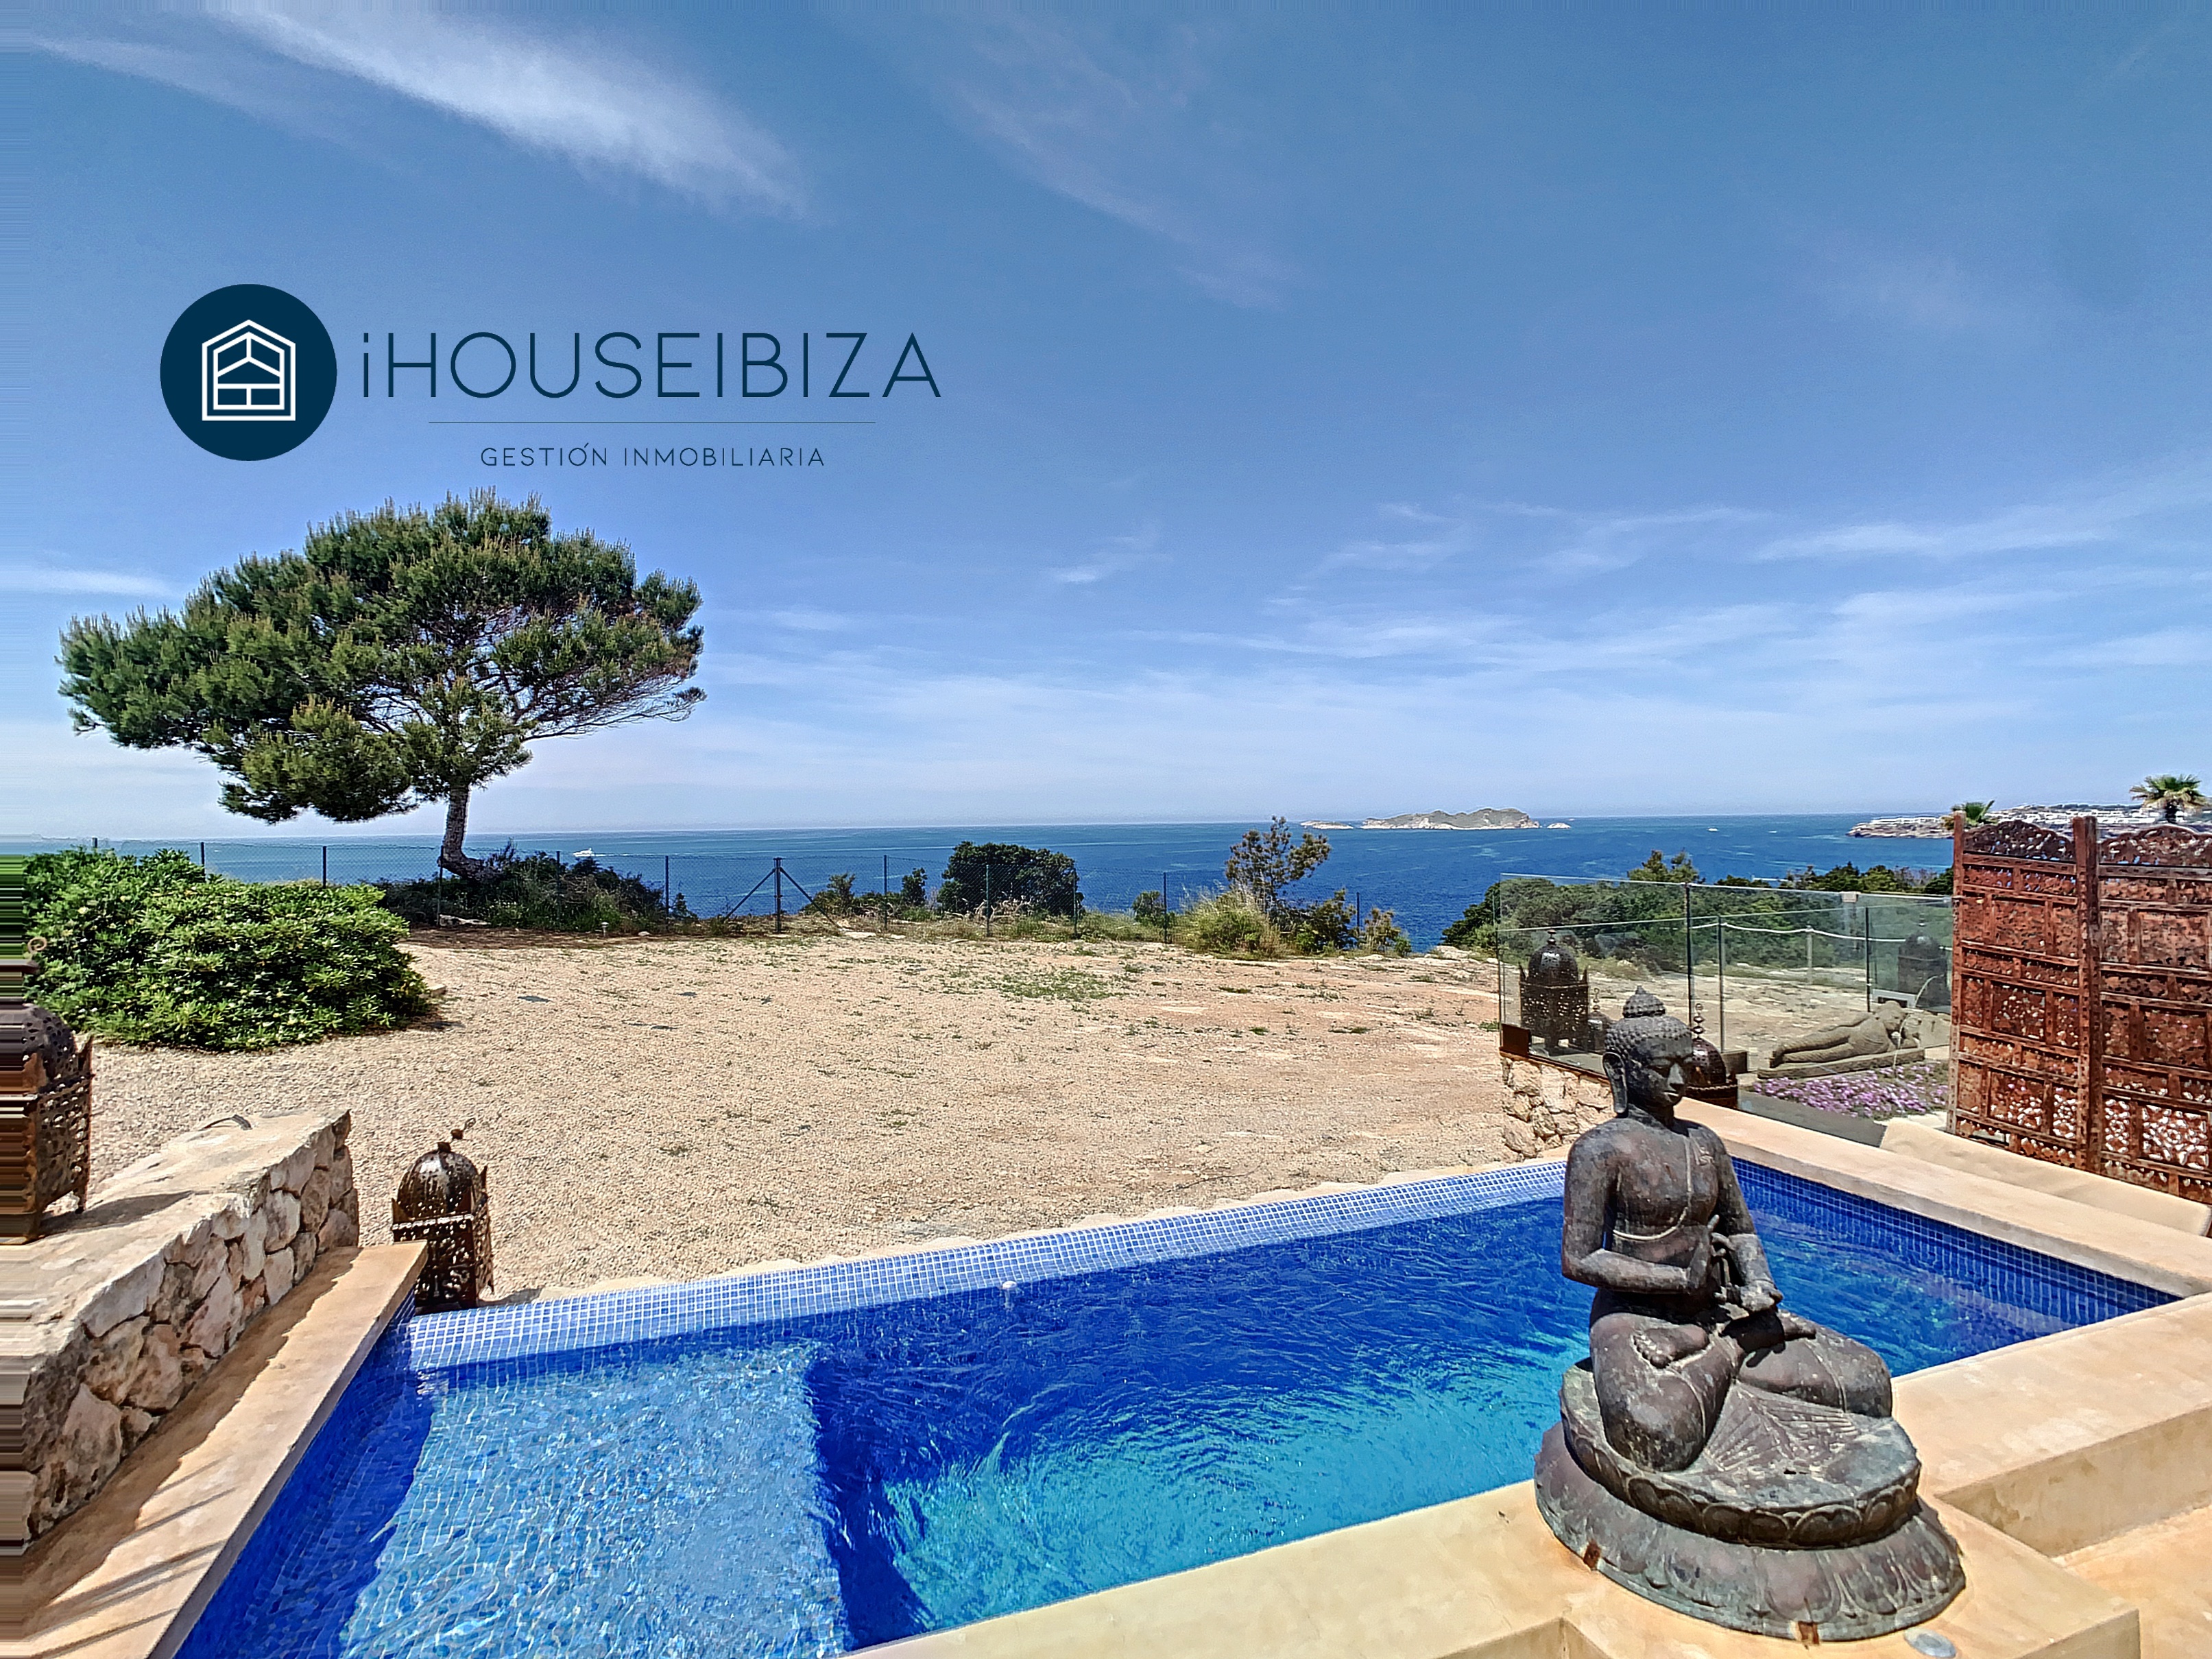 Casa con piscina a sfioro privata di fronte al mare.